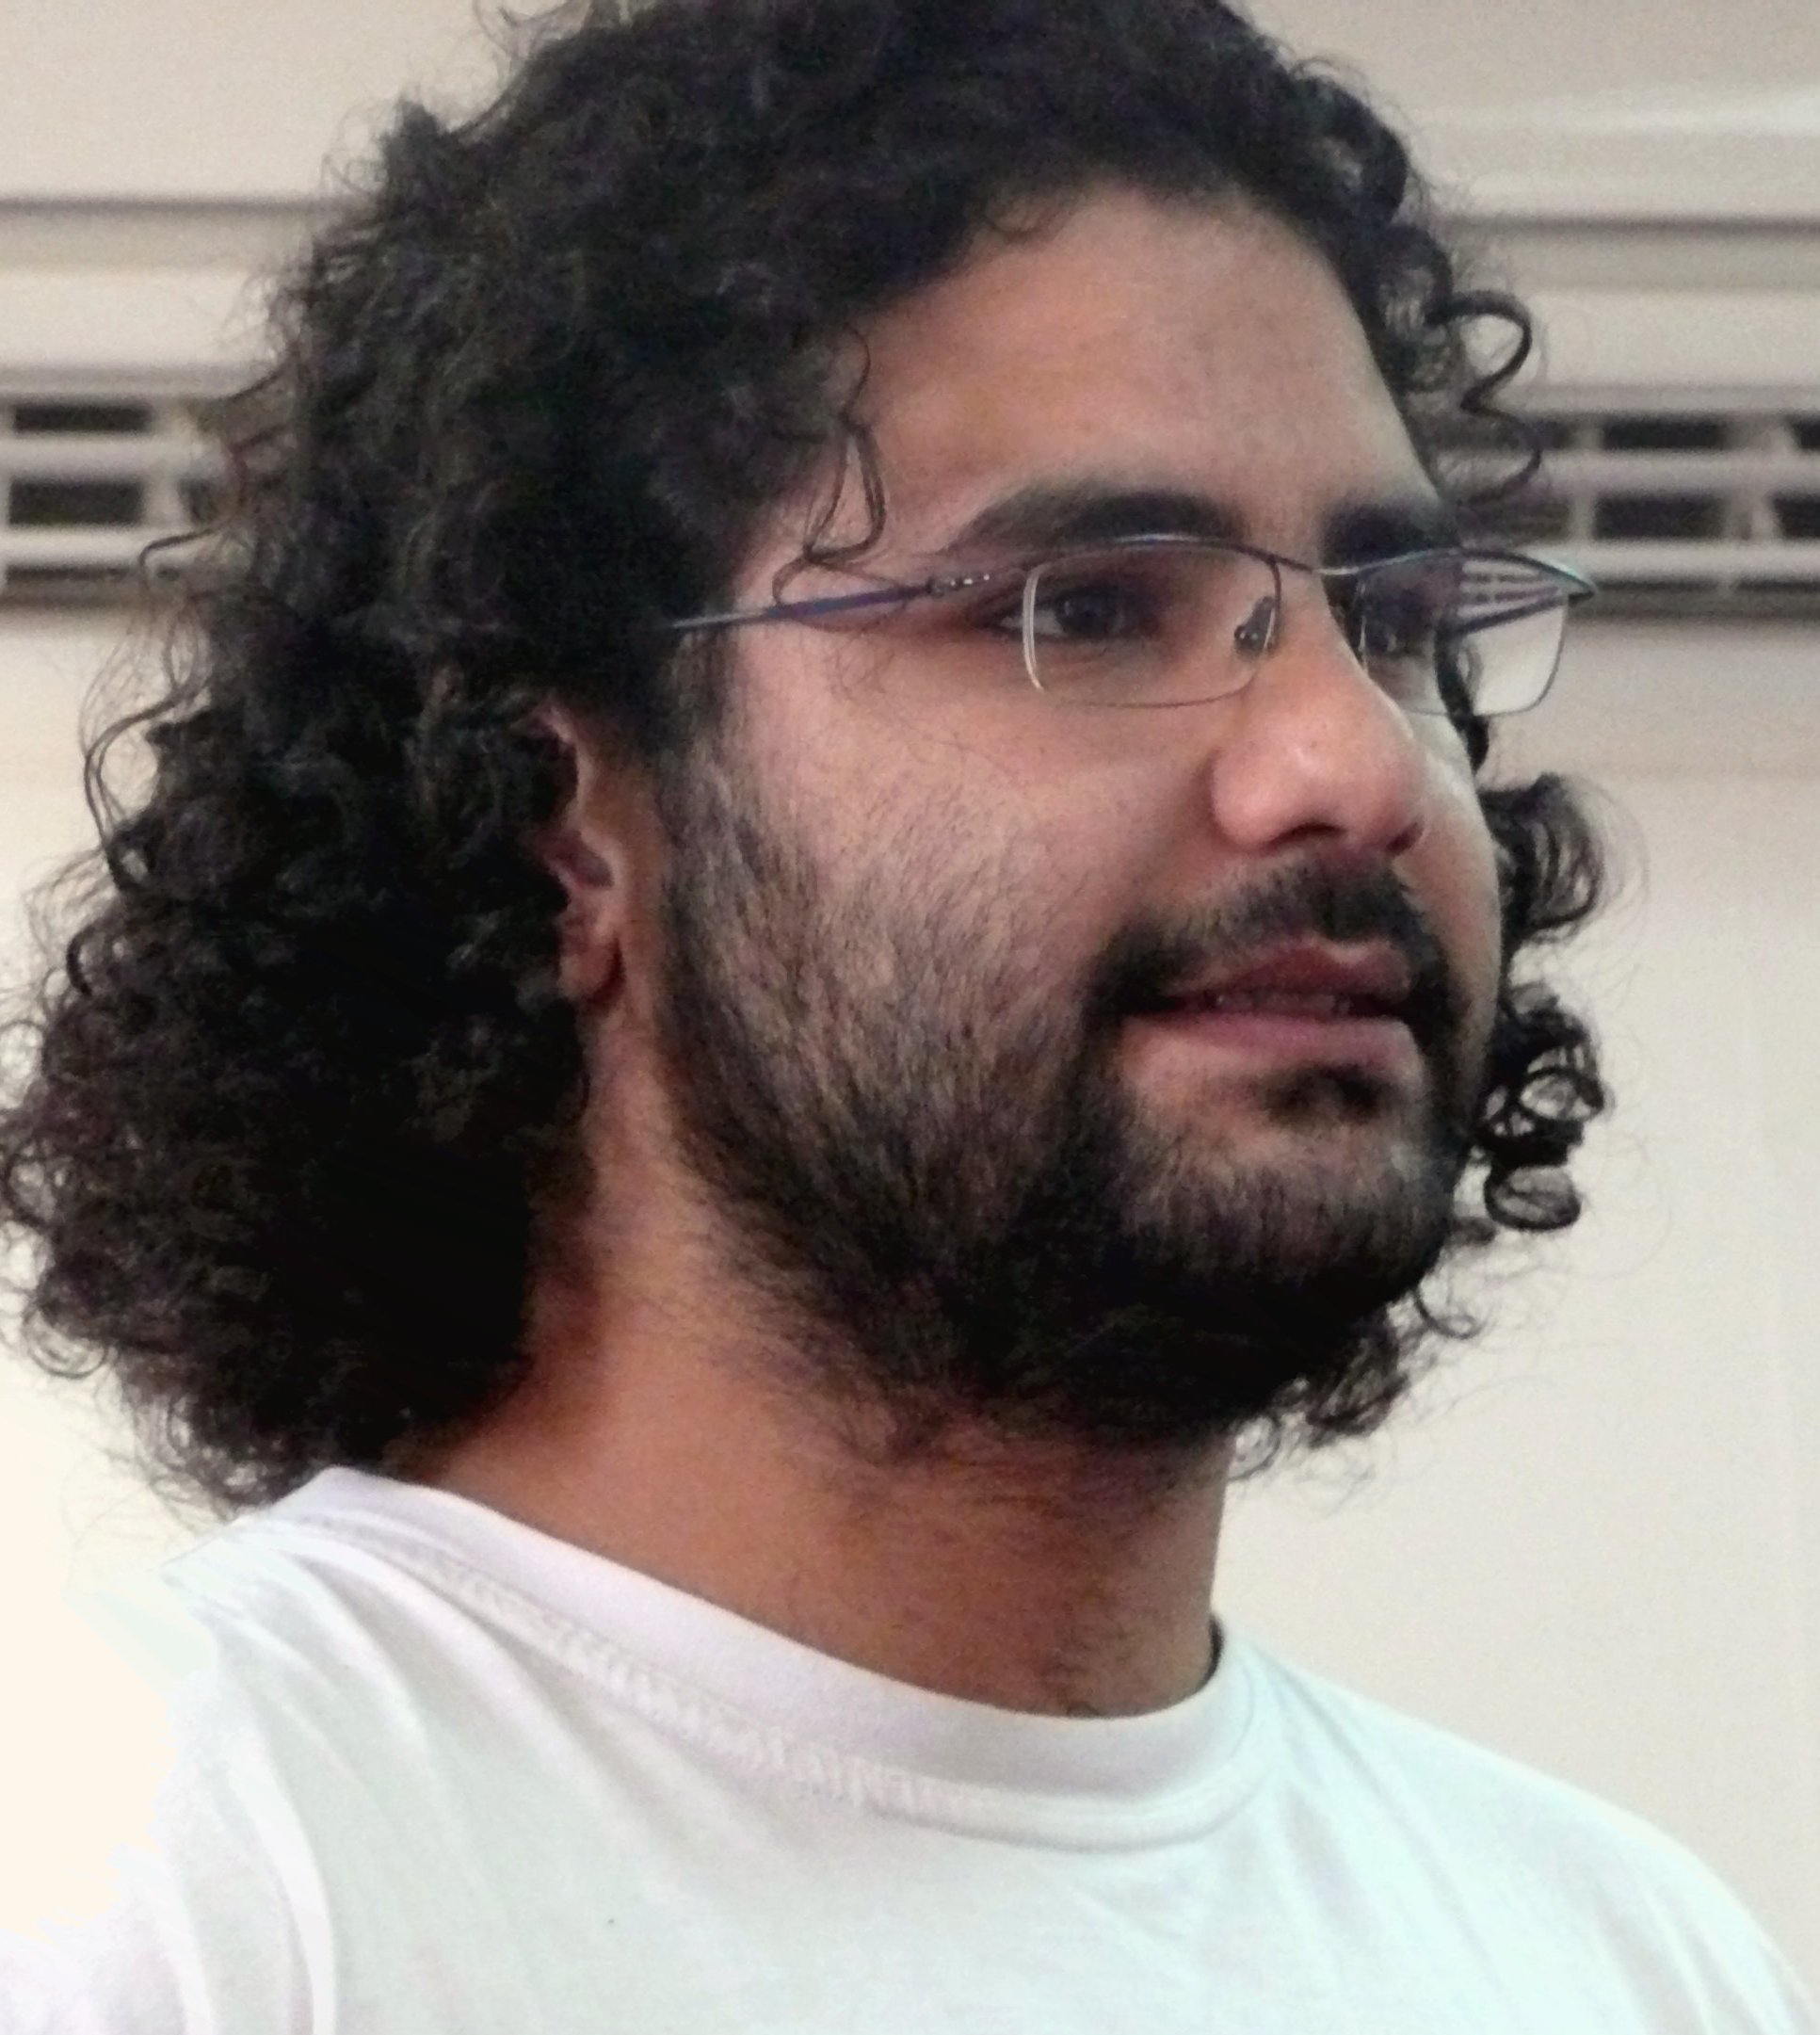 Egyptian-British activist breaks hunger strike - letter on Twitter